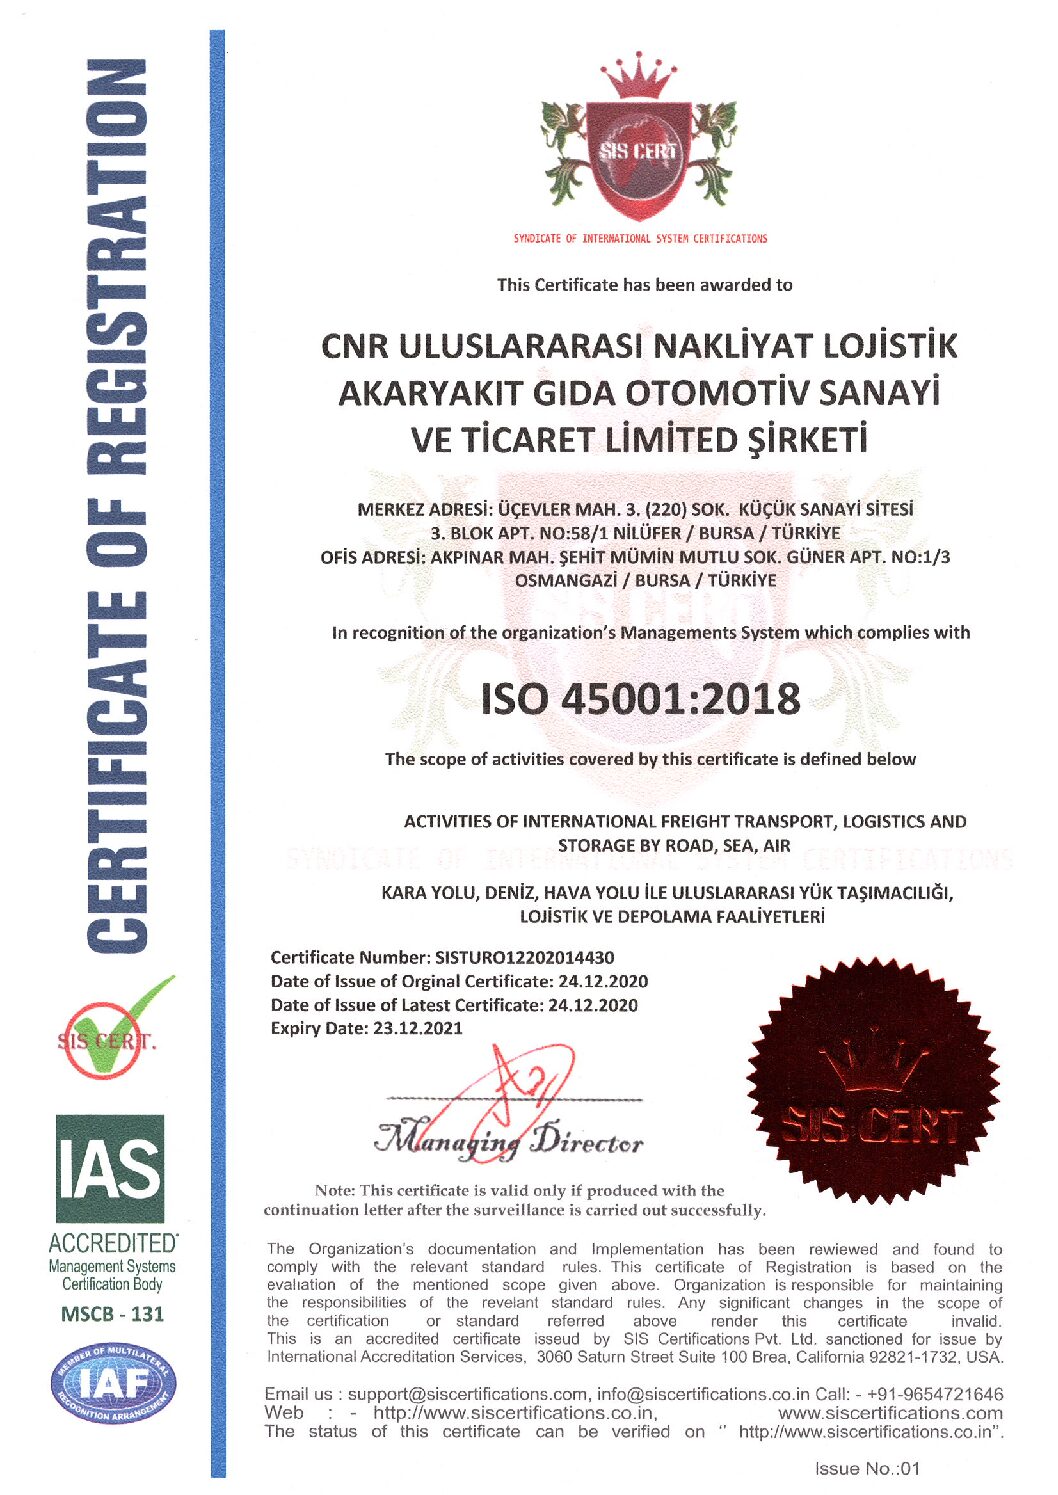 CNR-ULUSLARARASI-ISO-45001-BELGESI-pdf.jpg